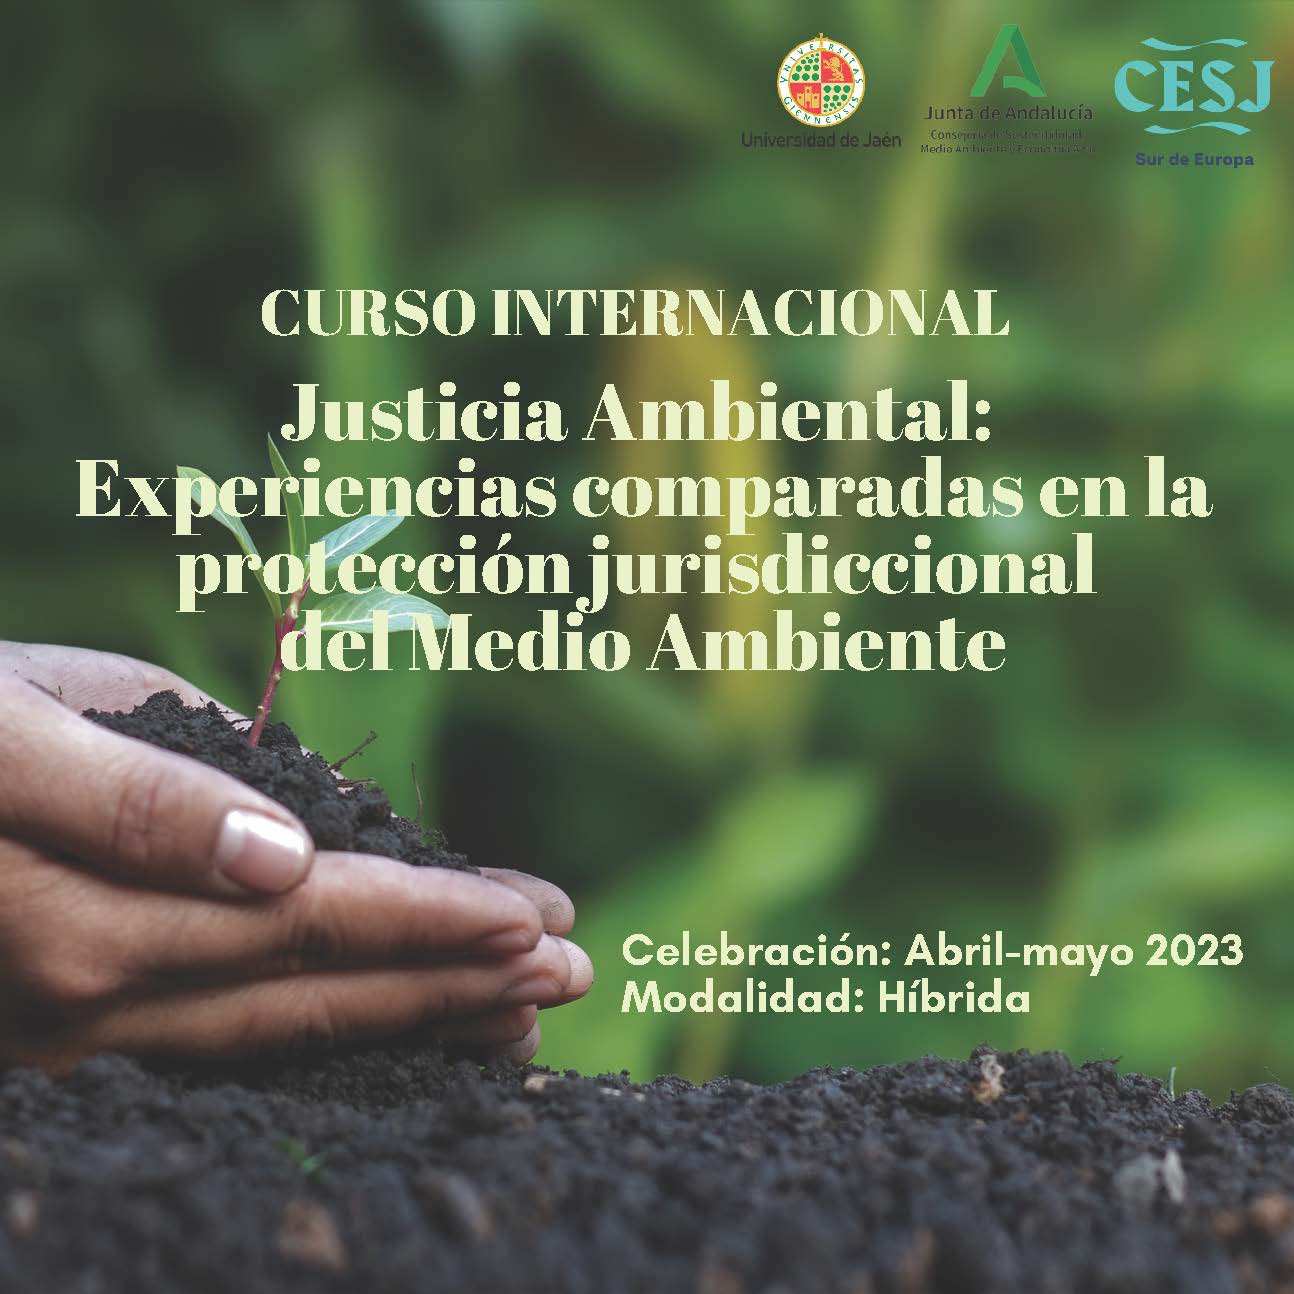 Justicia Ambiental: Experiencias comparadas en la protección jurisdiccional del medio ambiente.